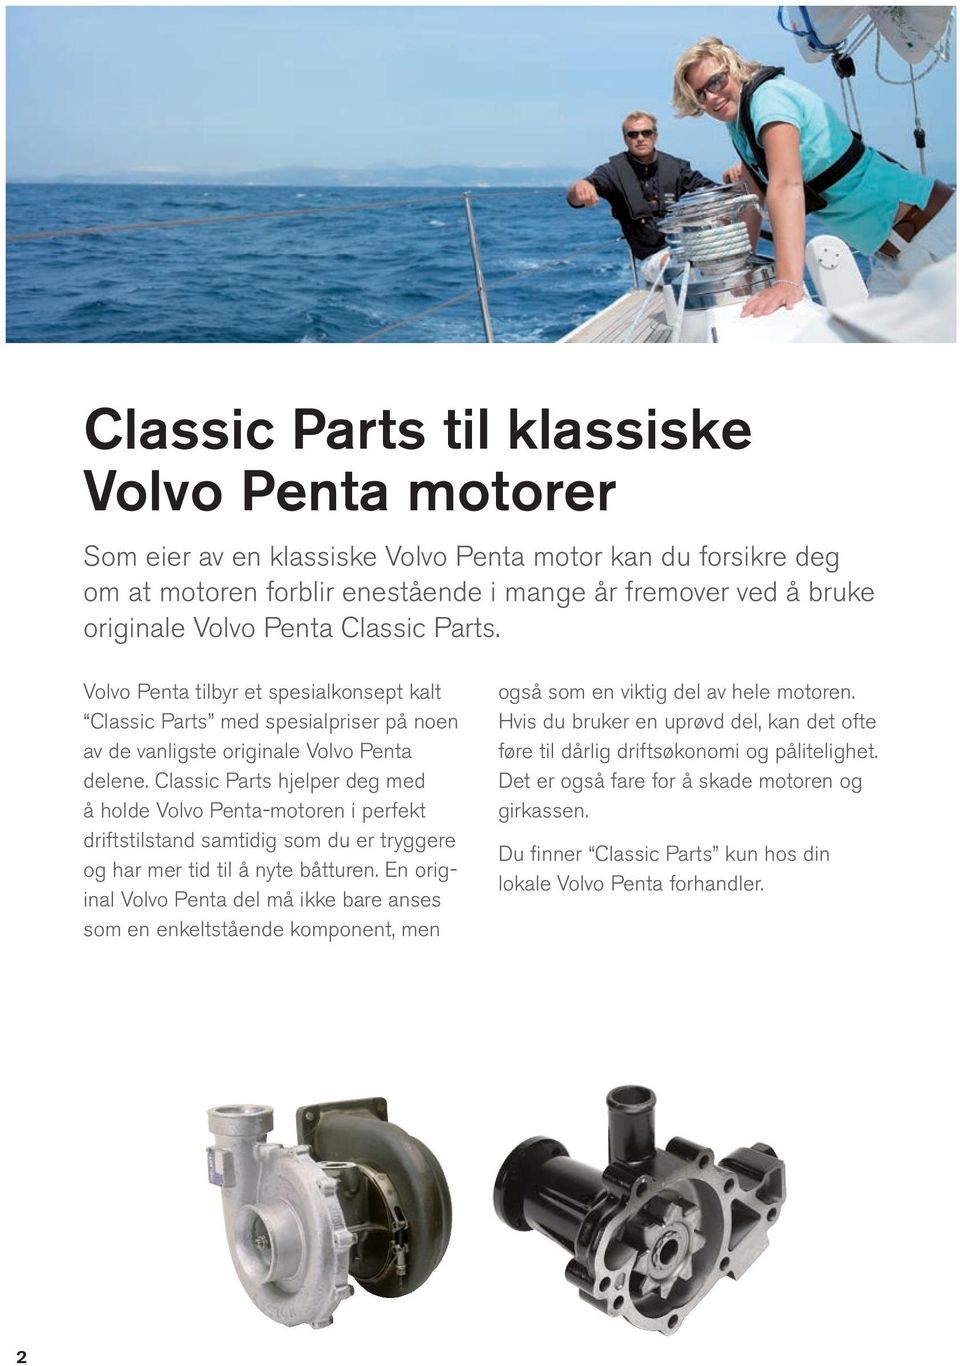 Classic Parts hjelper deg med å holde Volvo Penta-motoren i perfekt drifts tilstand samtidig som du er tryggere og har mer tid til å nyte båtturen.